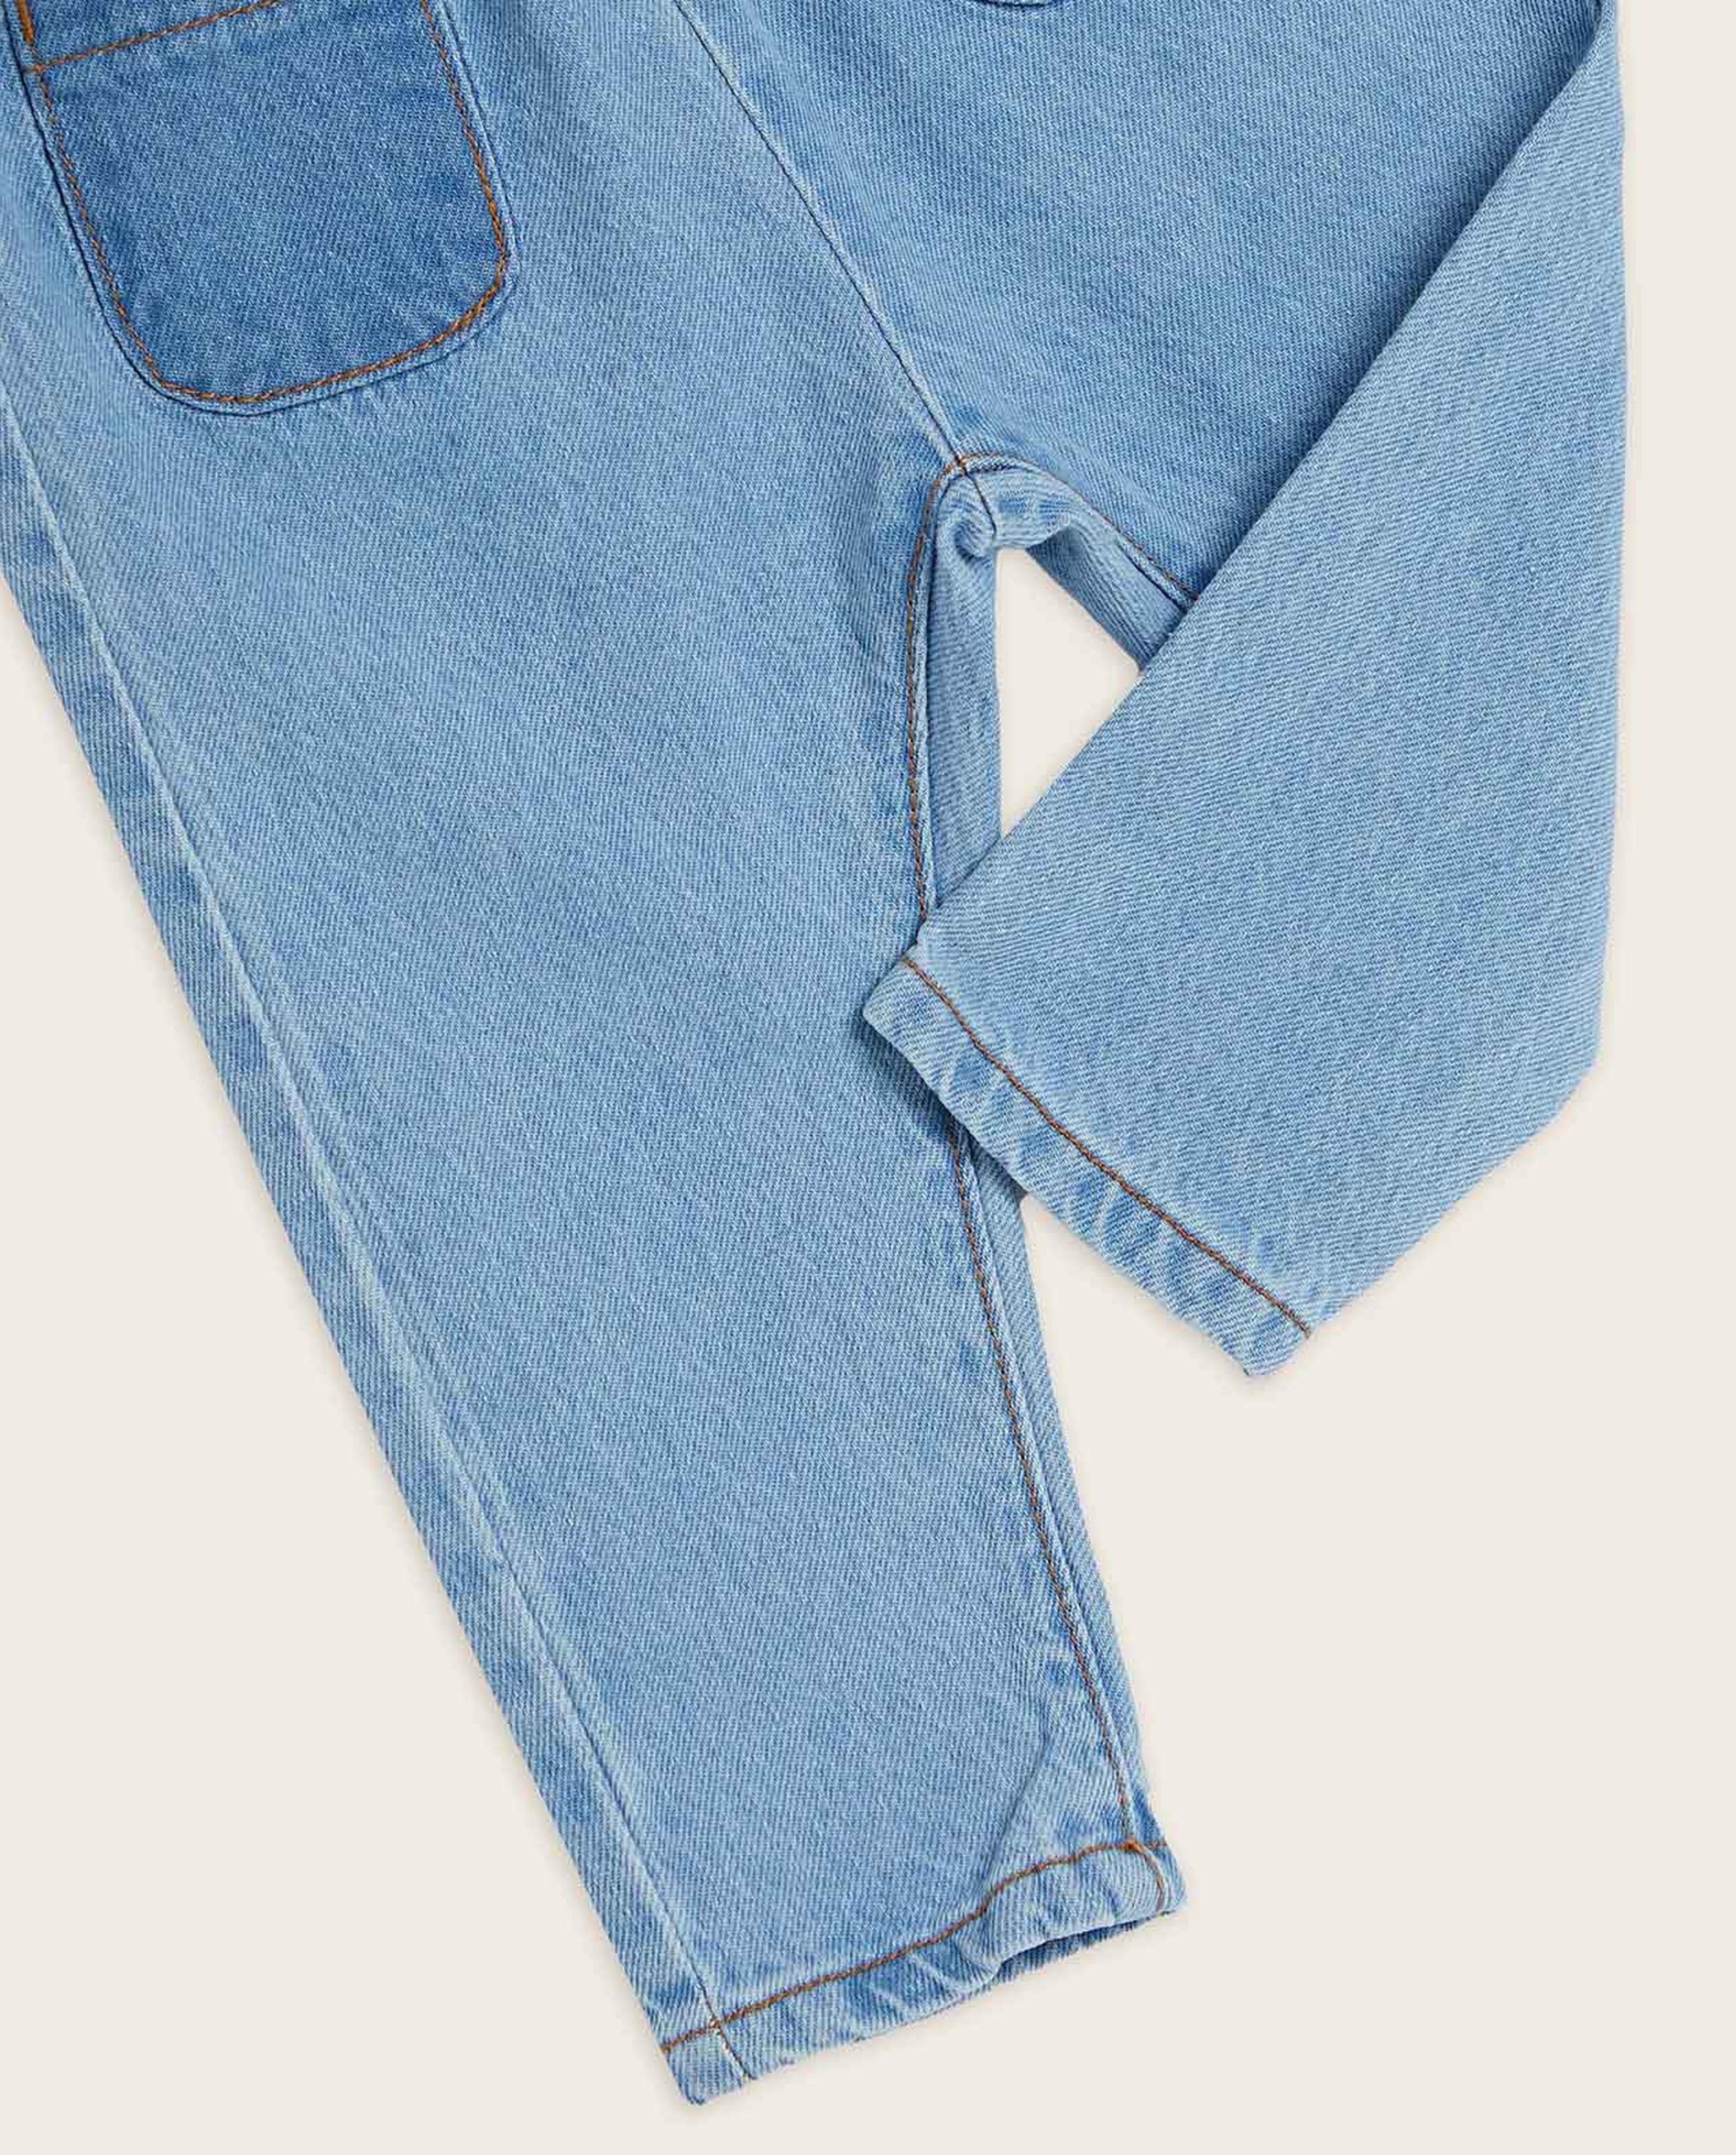 Pocket Front Belted Jeans